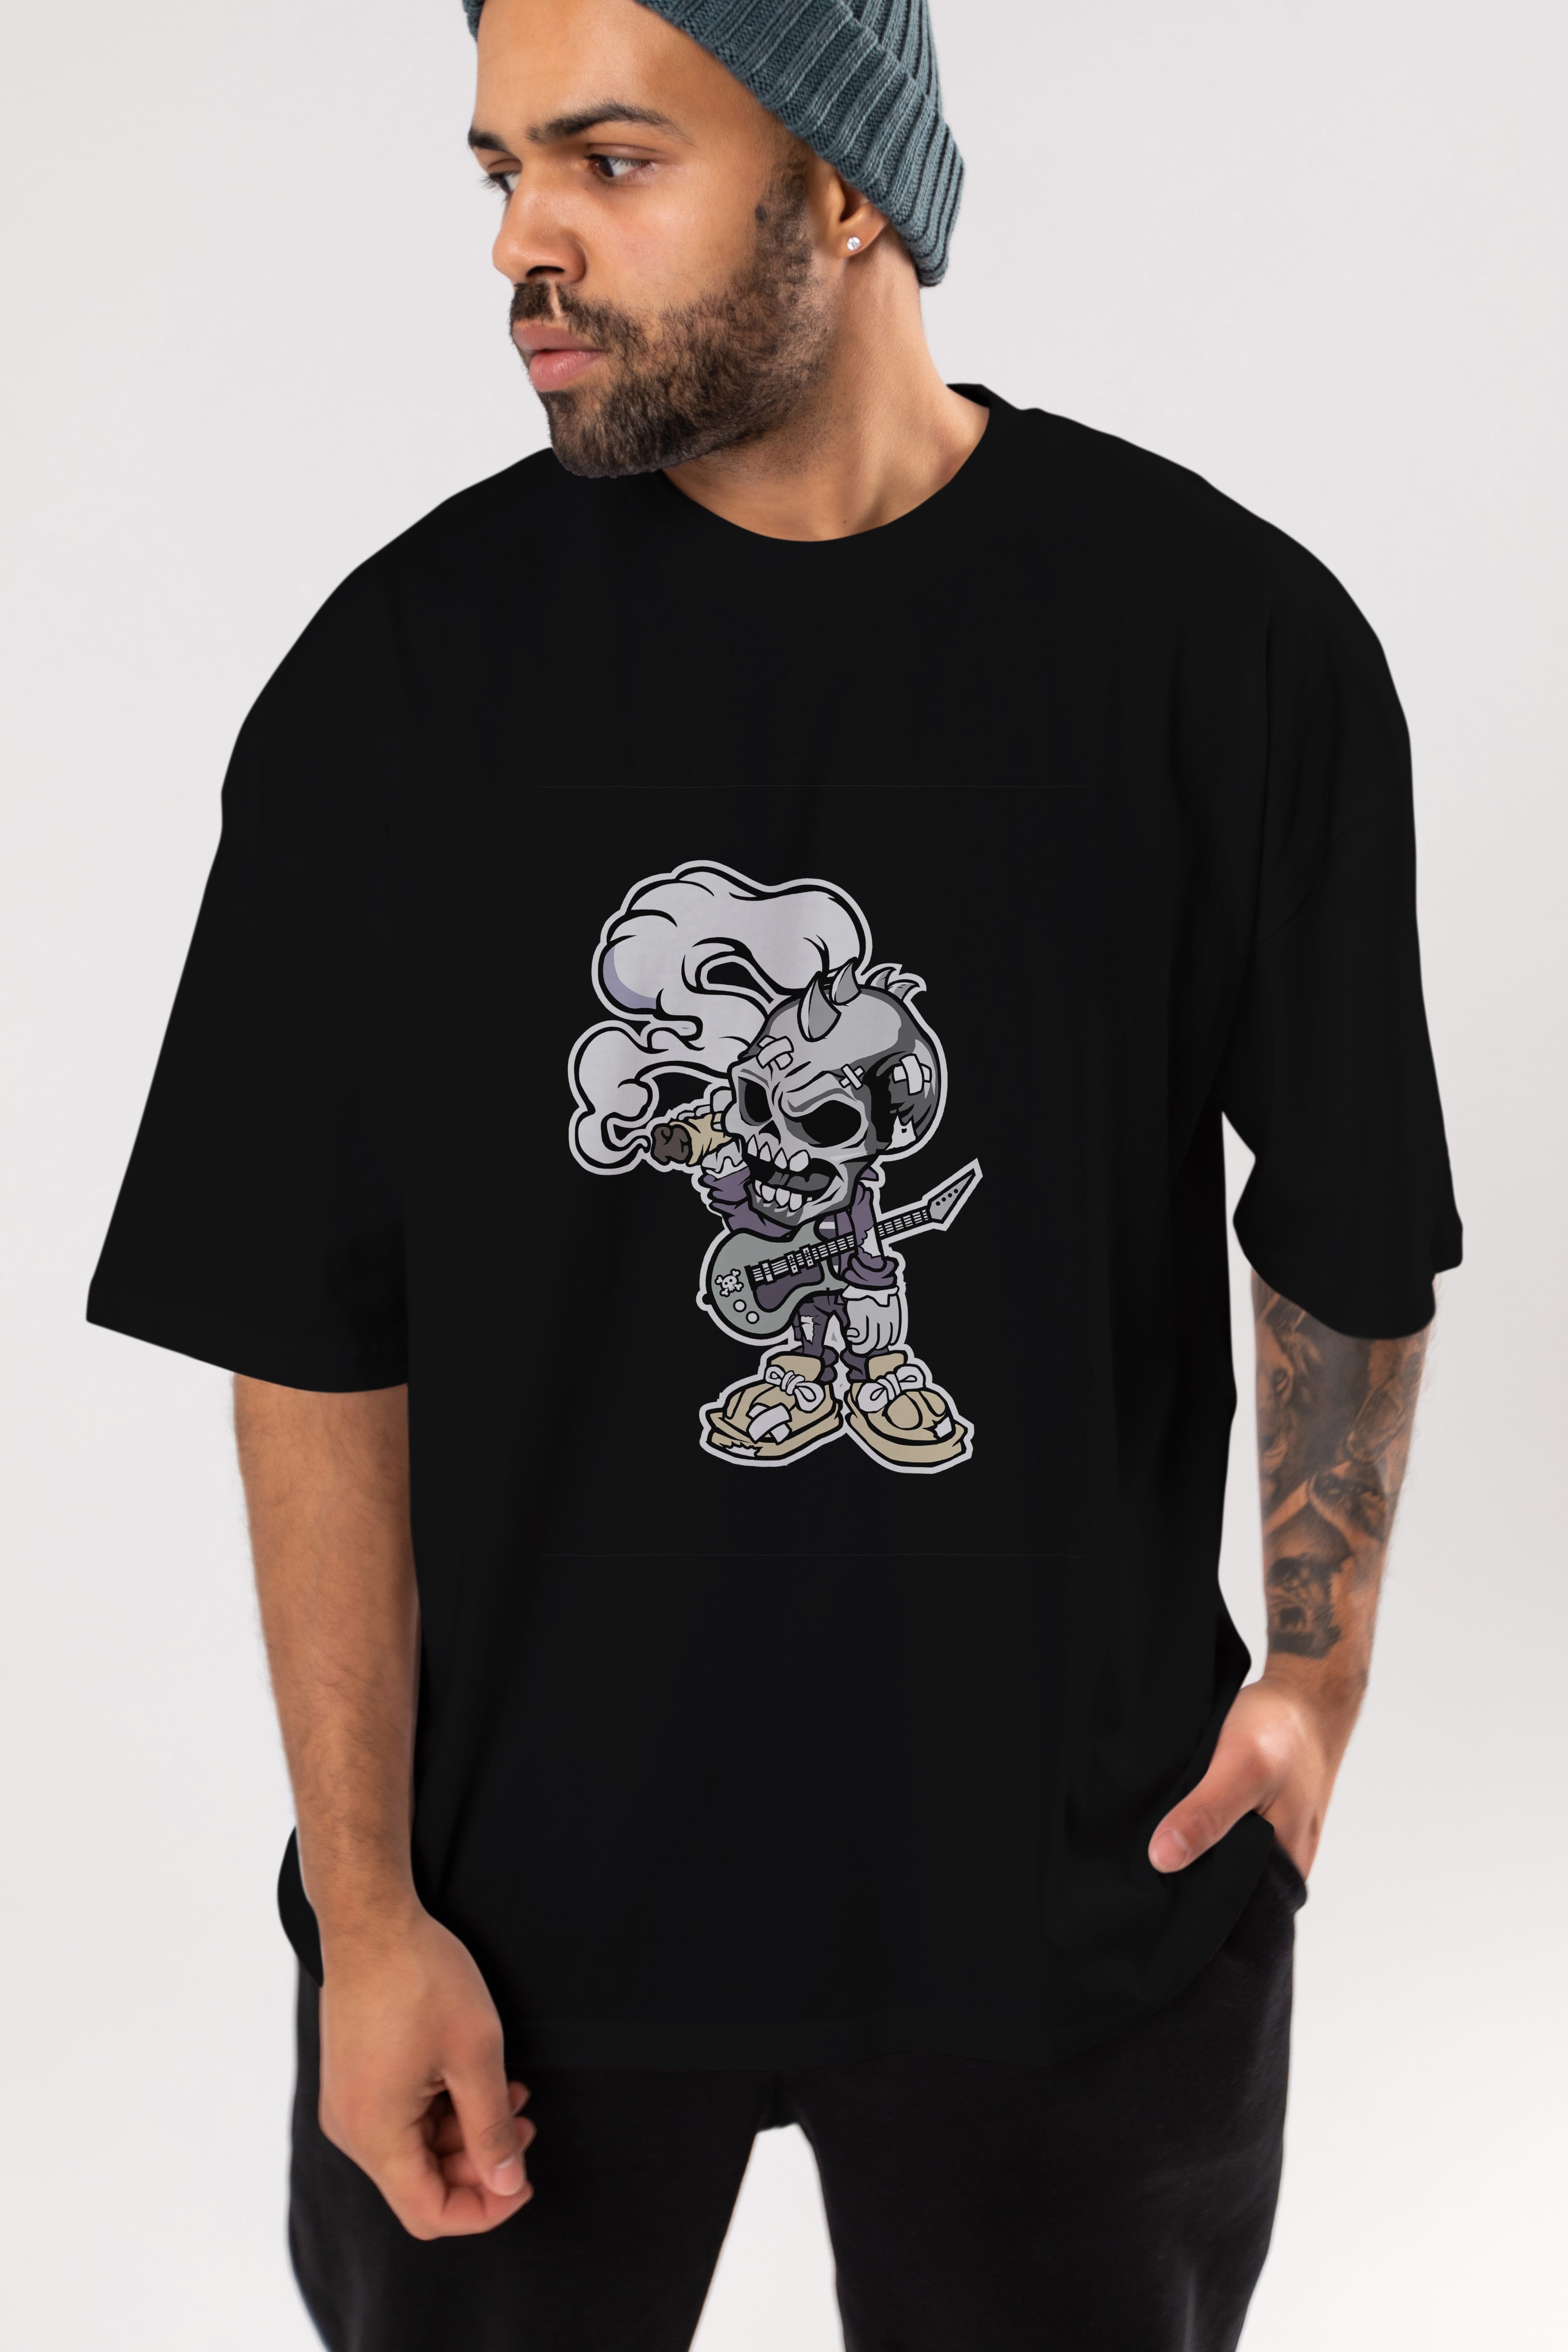 Skull Smoker Punk Rocker Ön Baskılı Oversize t-shirt Erkek Kadın Unisex %100 Pamuk tişort